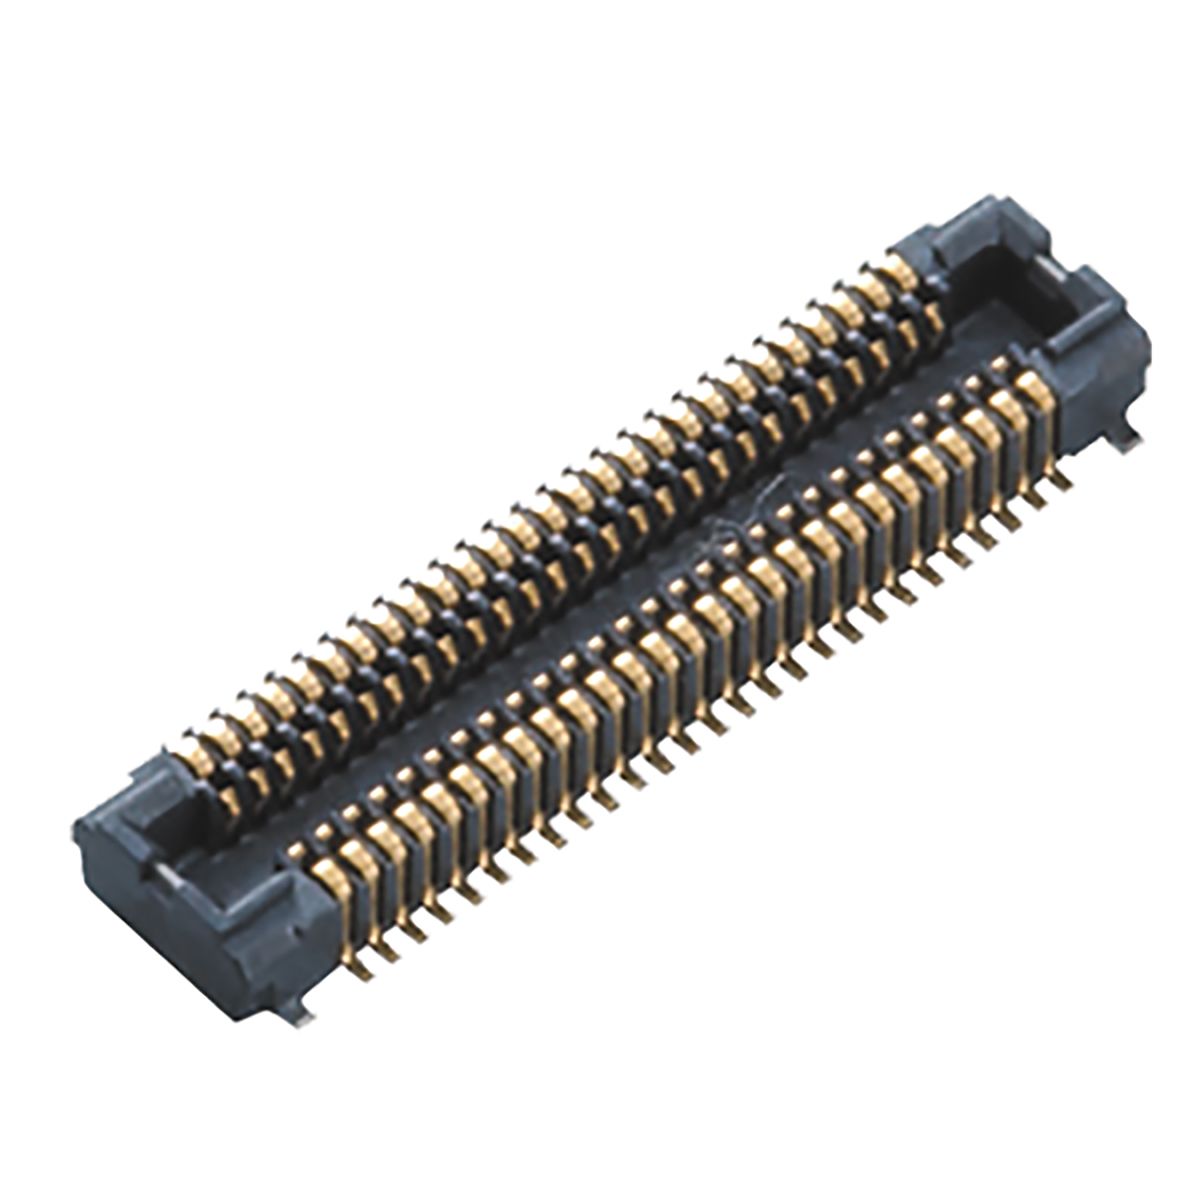 Conector macho para PCB Panasonic serie P4S de 26 vías, 2 filas, paso 0.4mm, para soldar, Montaje Superficial